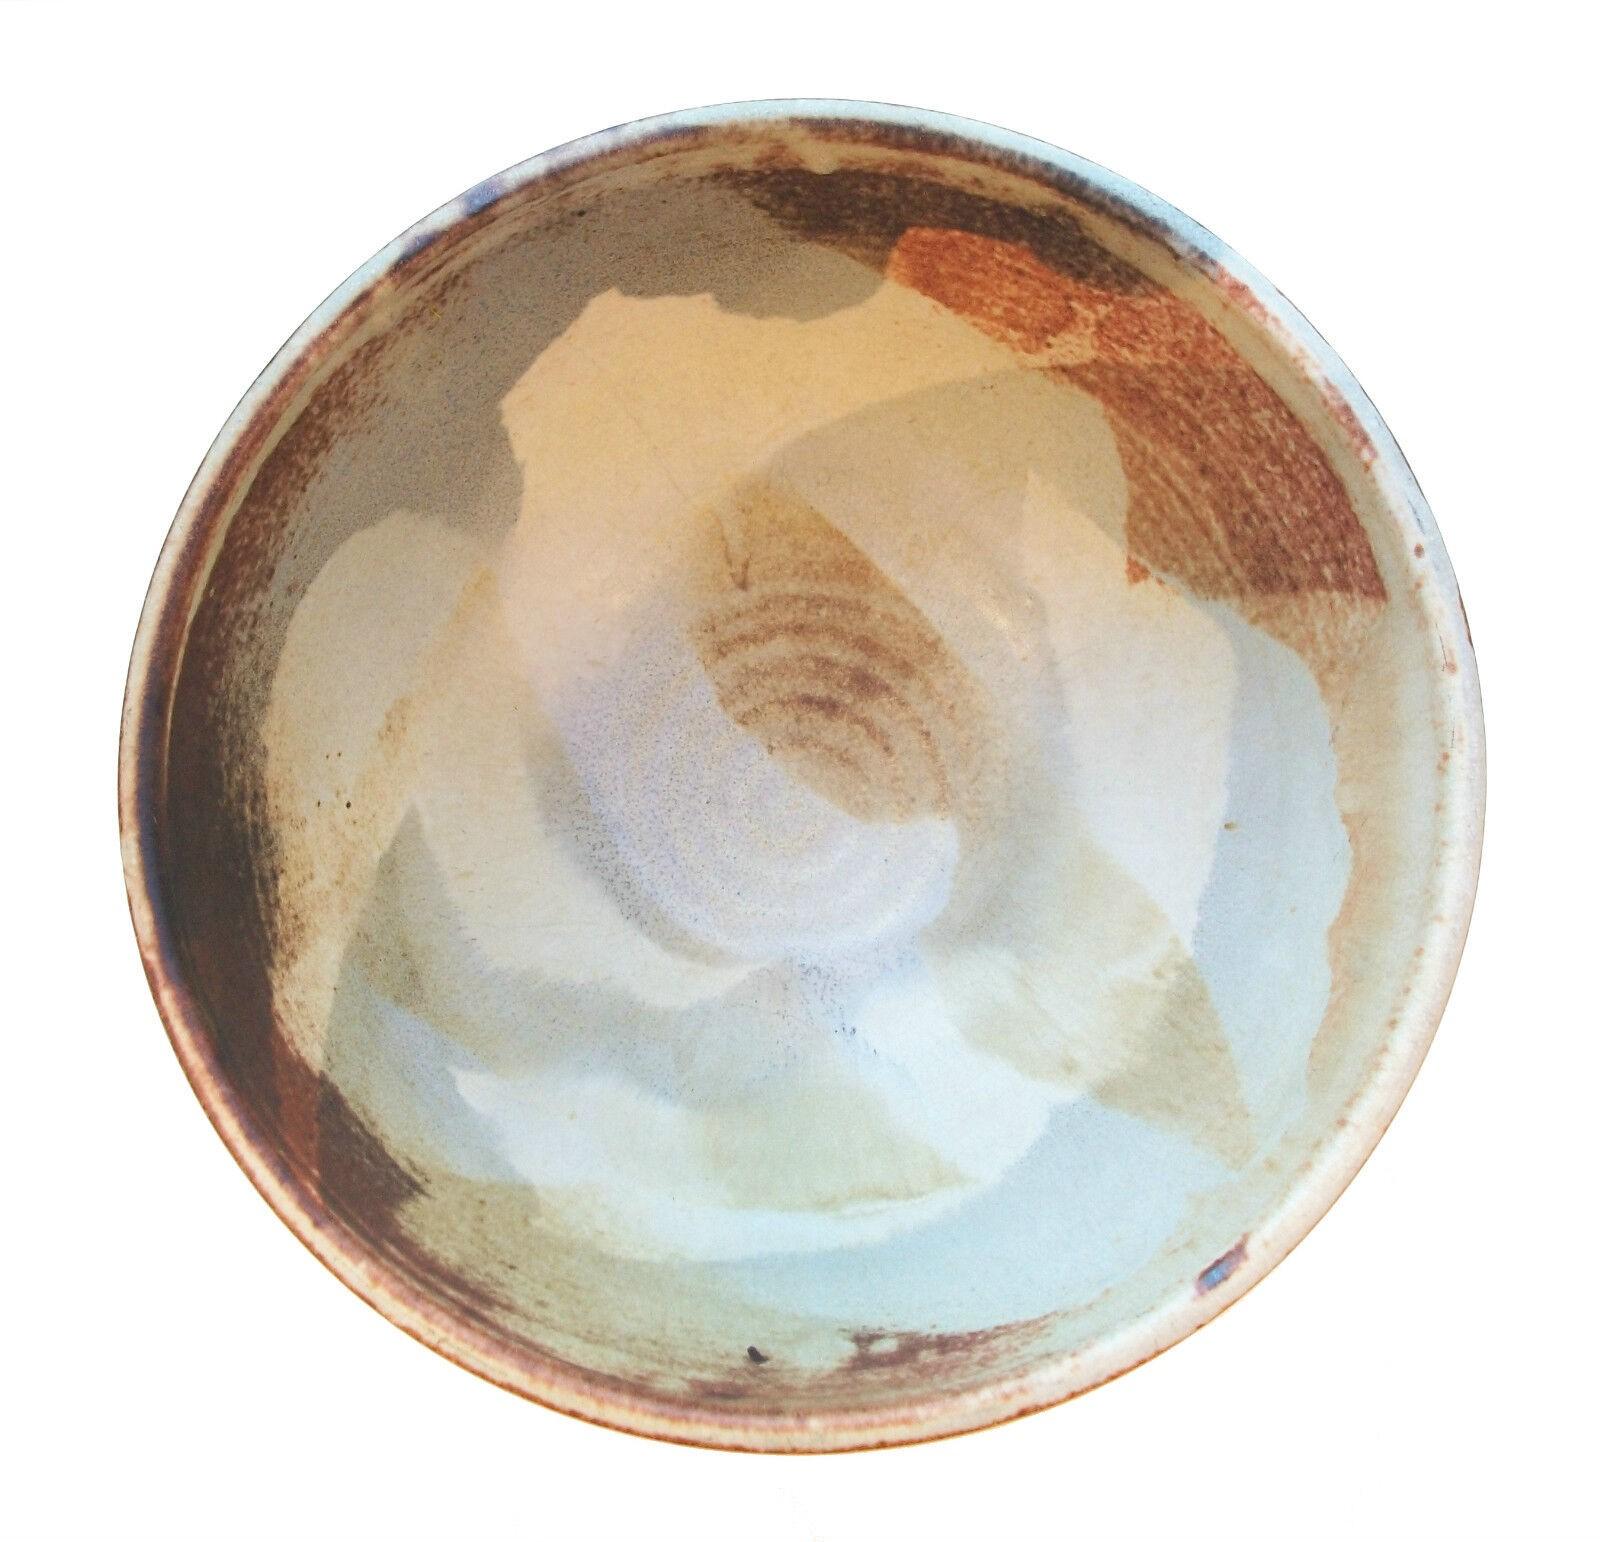 LOUISE MACNAB - Vintage Studio pottery center bowl - großformatig - auf der Drehscheibe gedreht - Spritzglasurdekor - signiert auf dem Sockel - Kanada - Ende 20.

Ausgezeichneter Vintage-Zustand - Brandriss am Sockel (der die Integrität der Schale